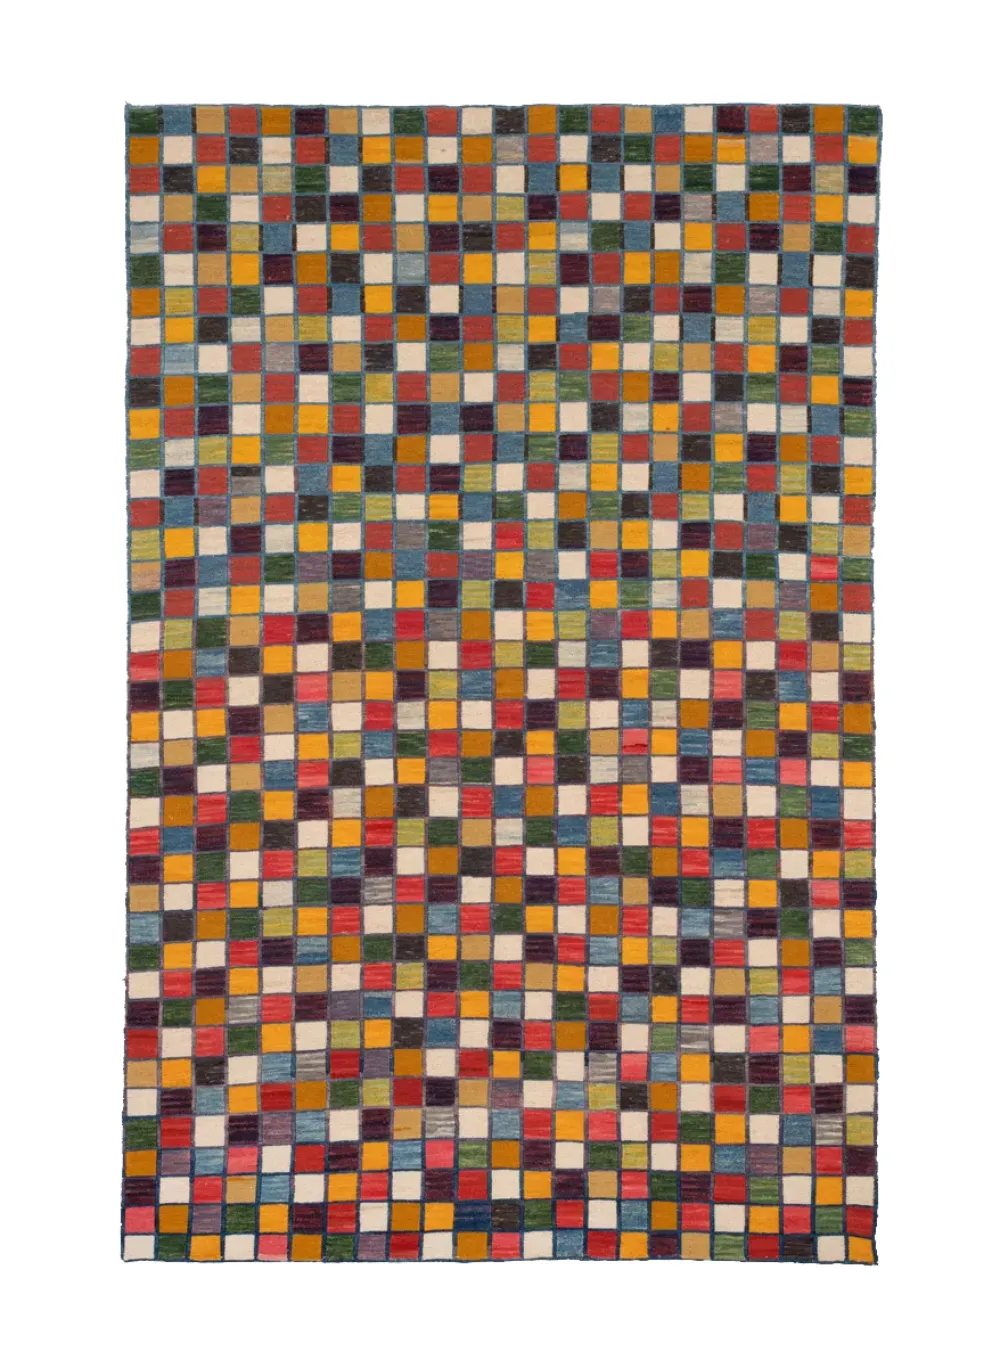 Colorful Persian kilim rug